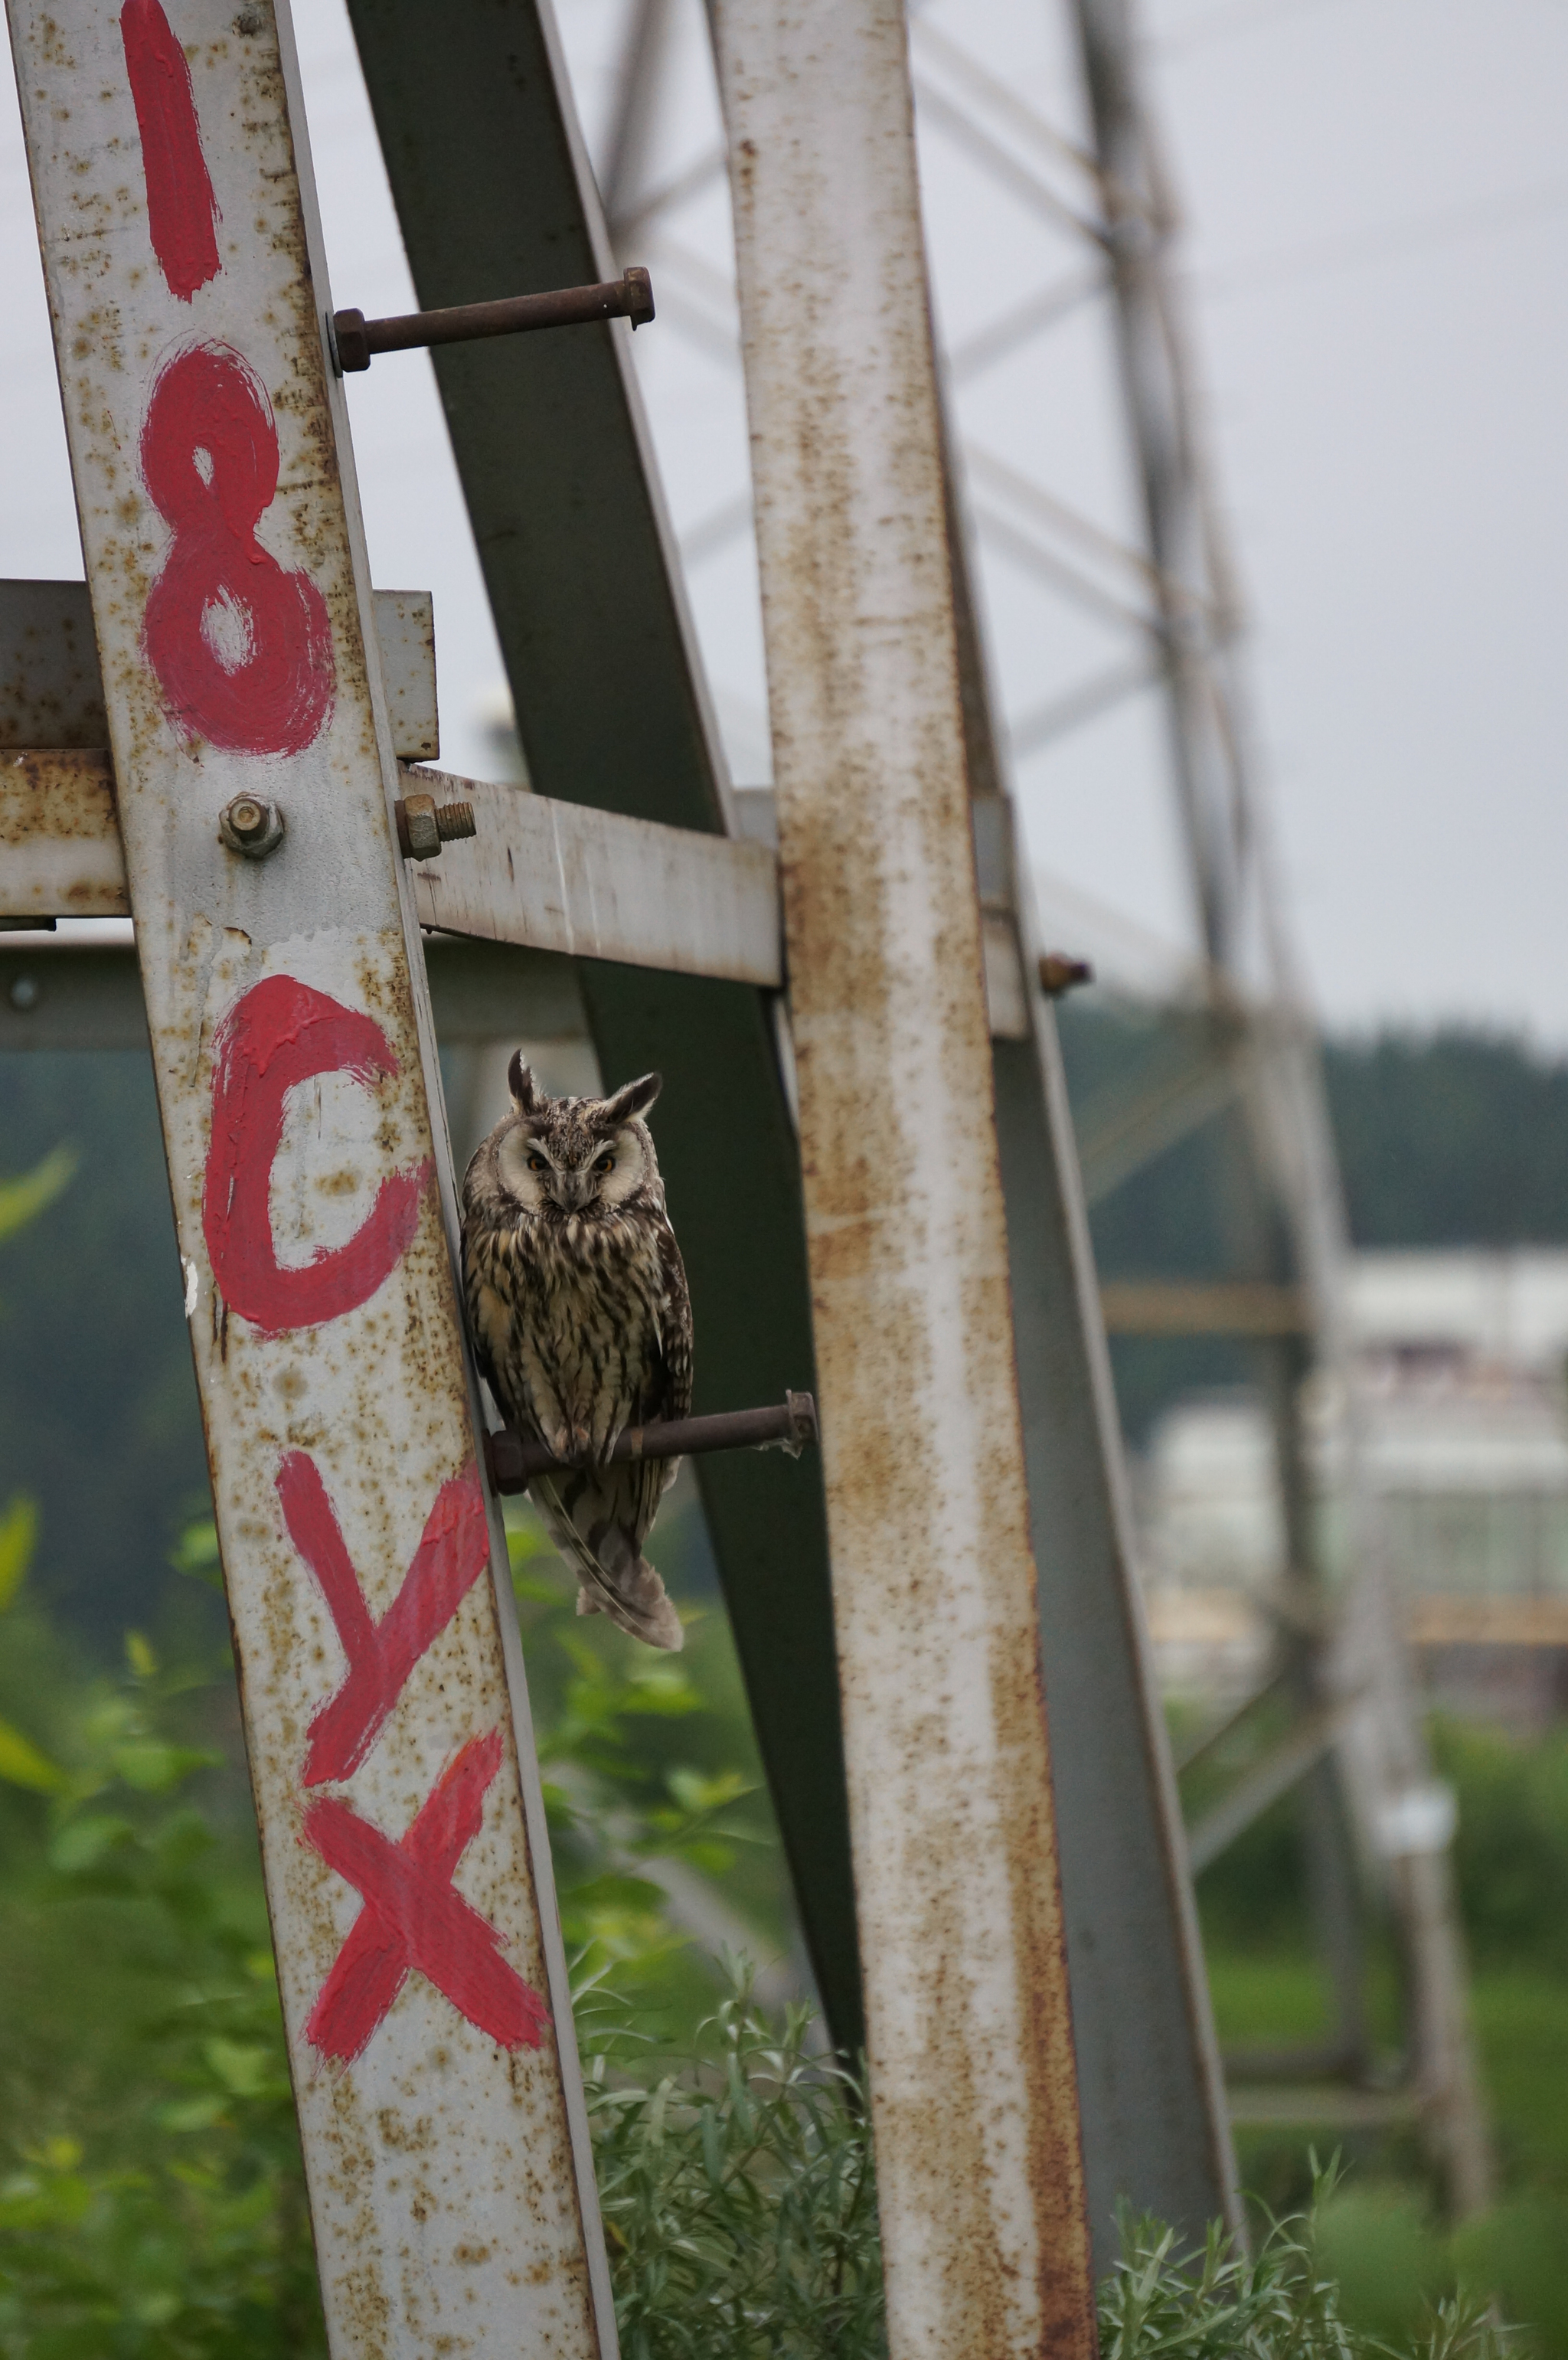 Owls - My, Owl, Permian, Sony nex5, Chick, Yes, Longpost